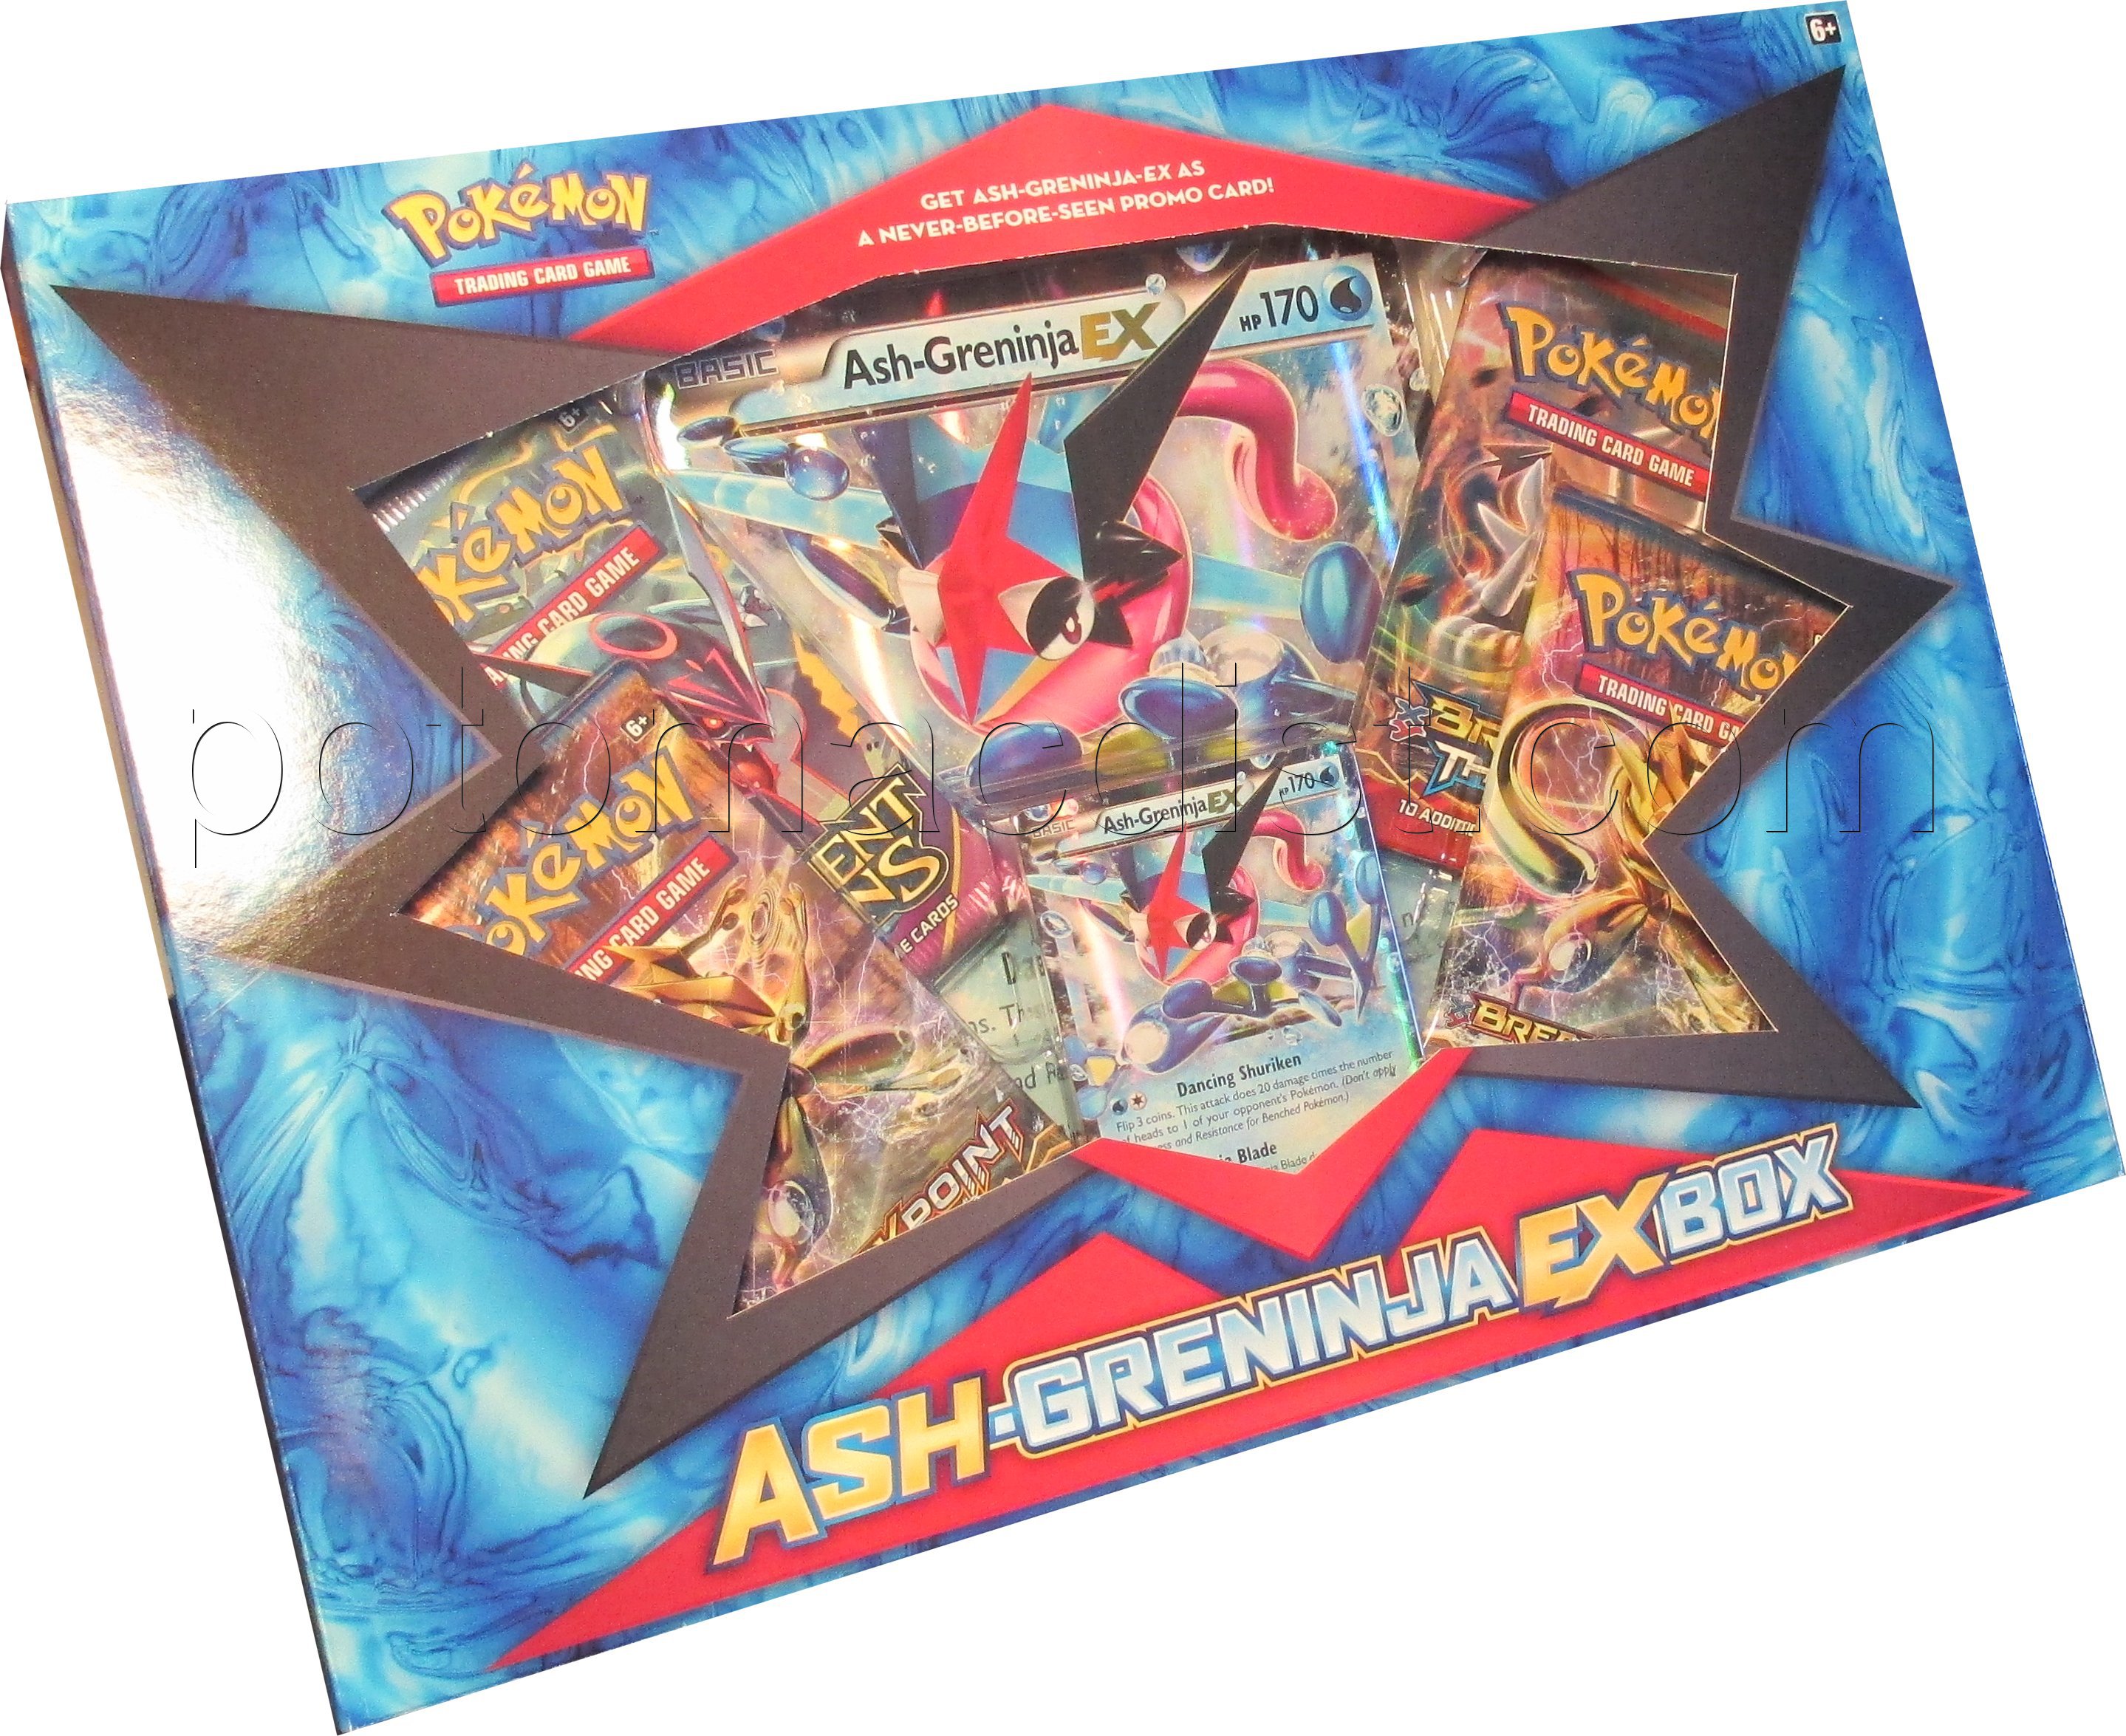 Pokemon TCG Ash-Greninja-EX Trading Card Box